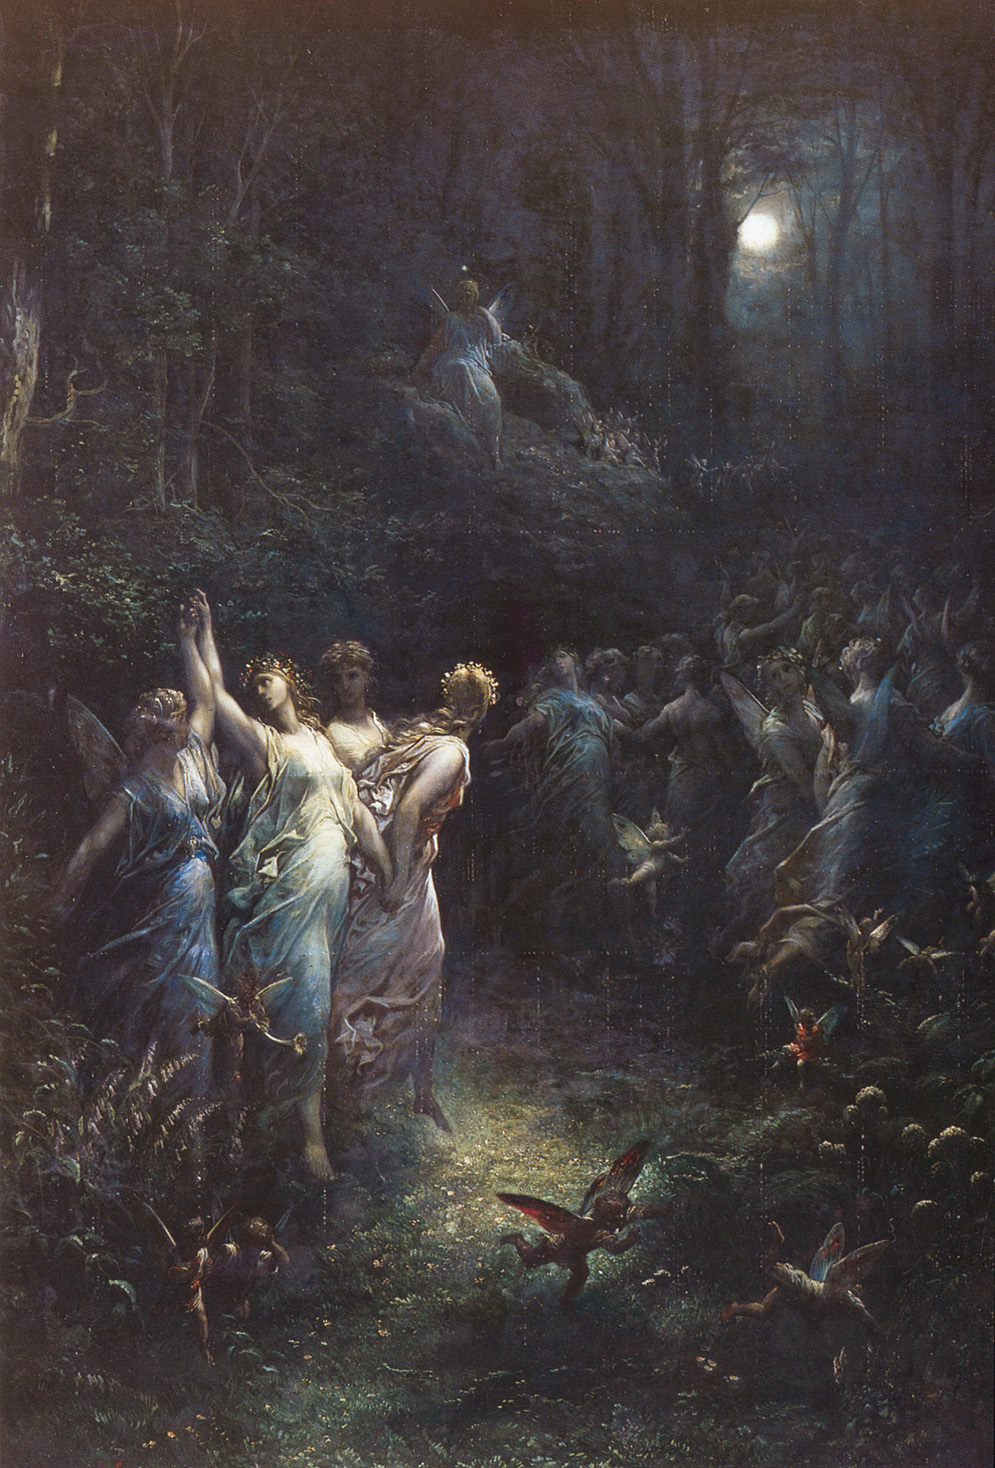 Gustave Doré, Midsummer night's dream - MedicinaNarrativa.eu